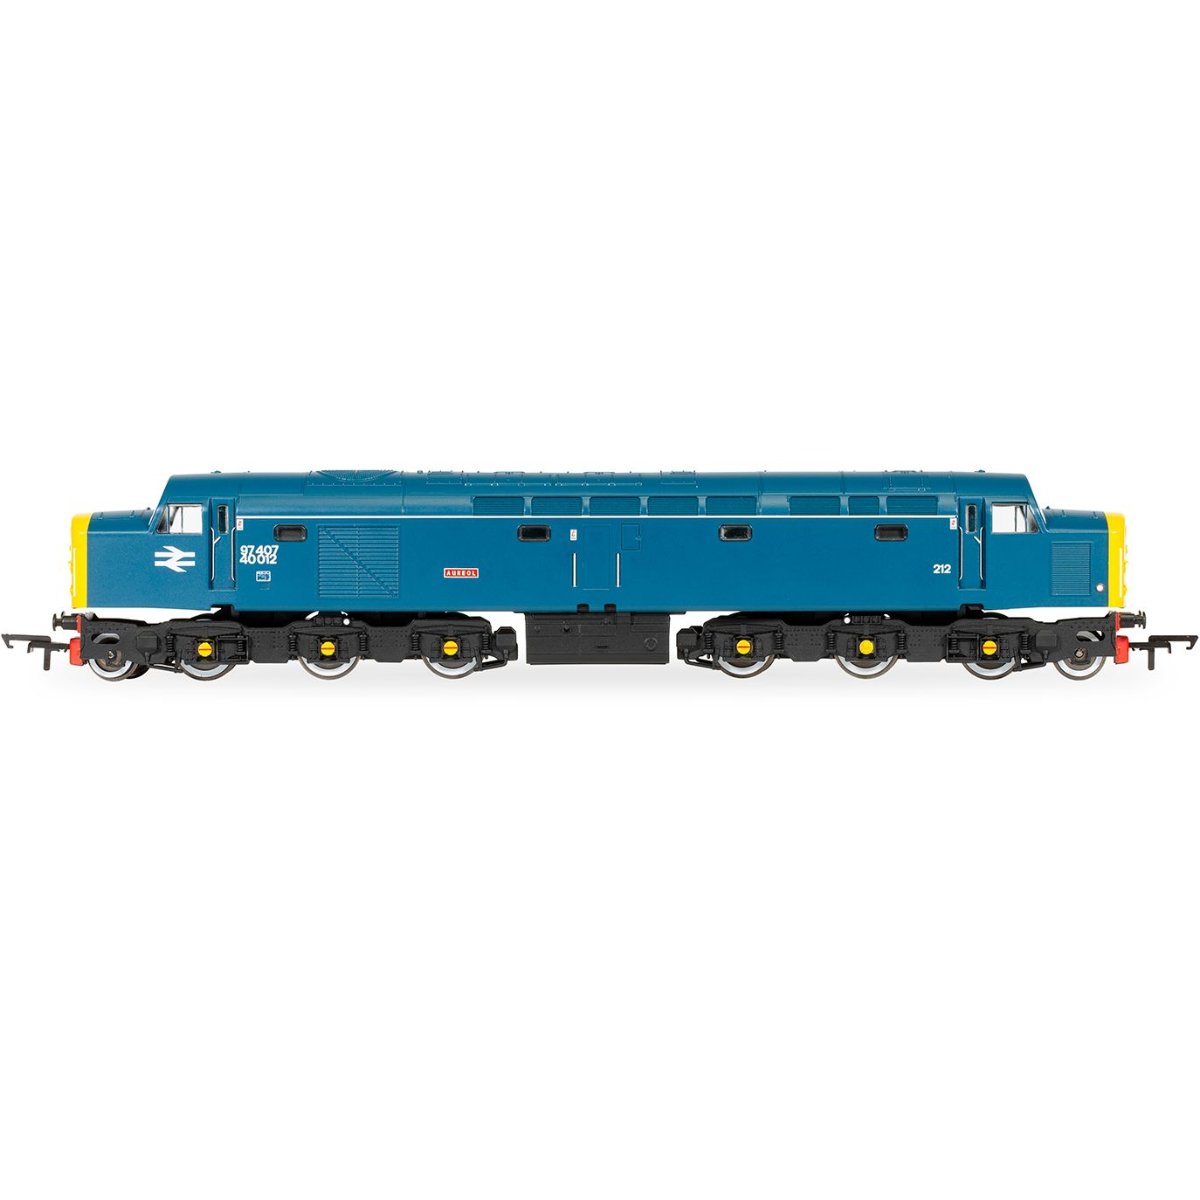 Hornby R30191 RailRoad Plus BR, Departmental, Class 40, 1Co-Co1, 97407 ‘Aureol’ - OO Gauge - Phillips Hobbies